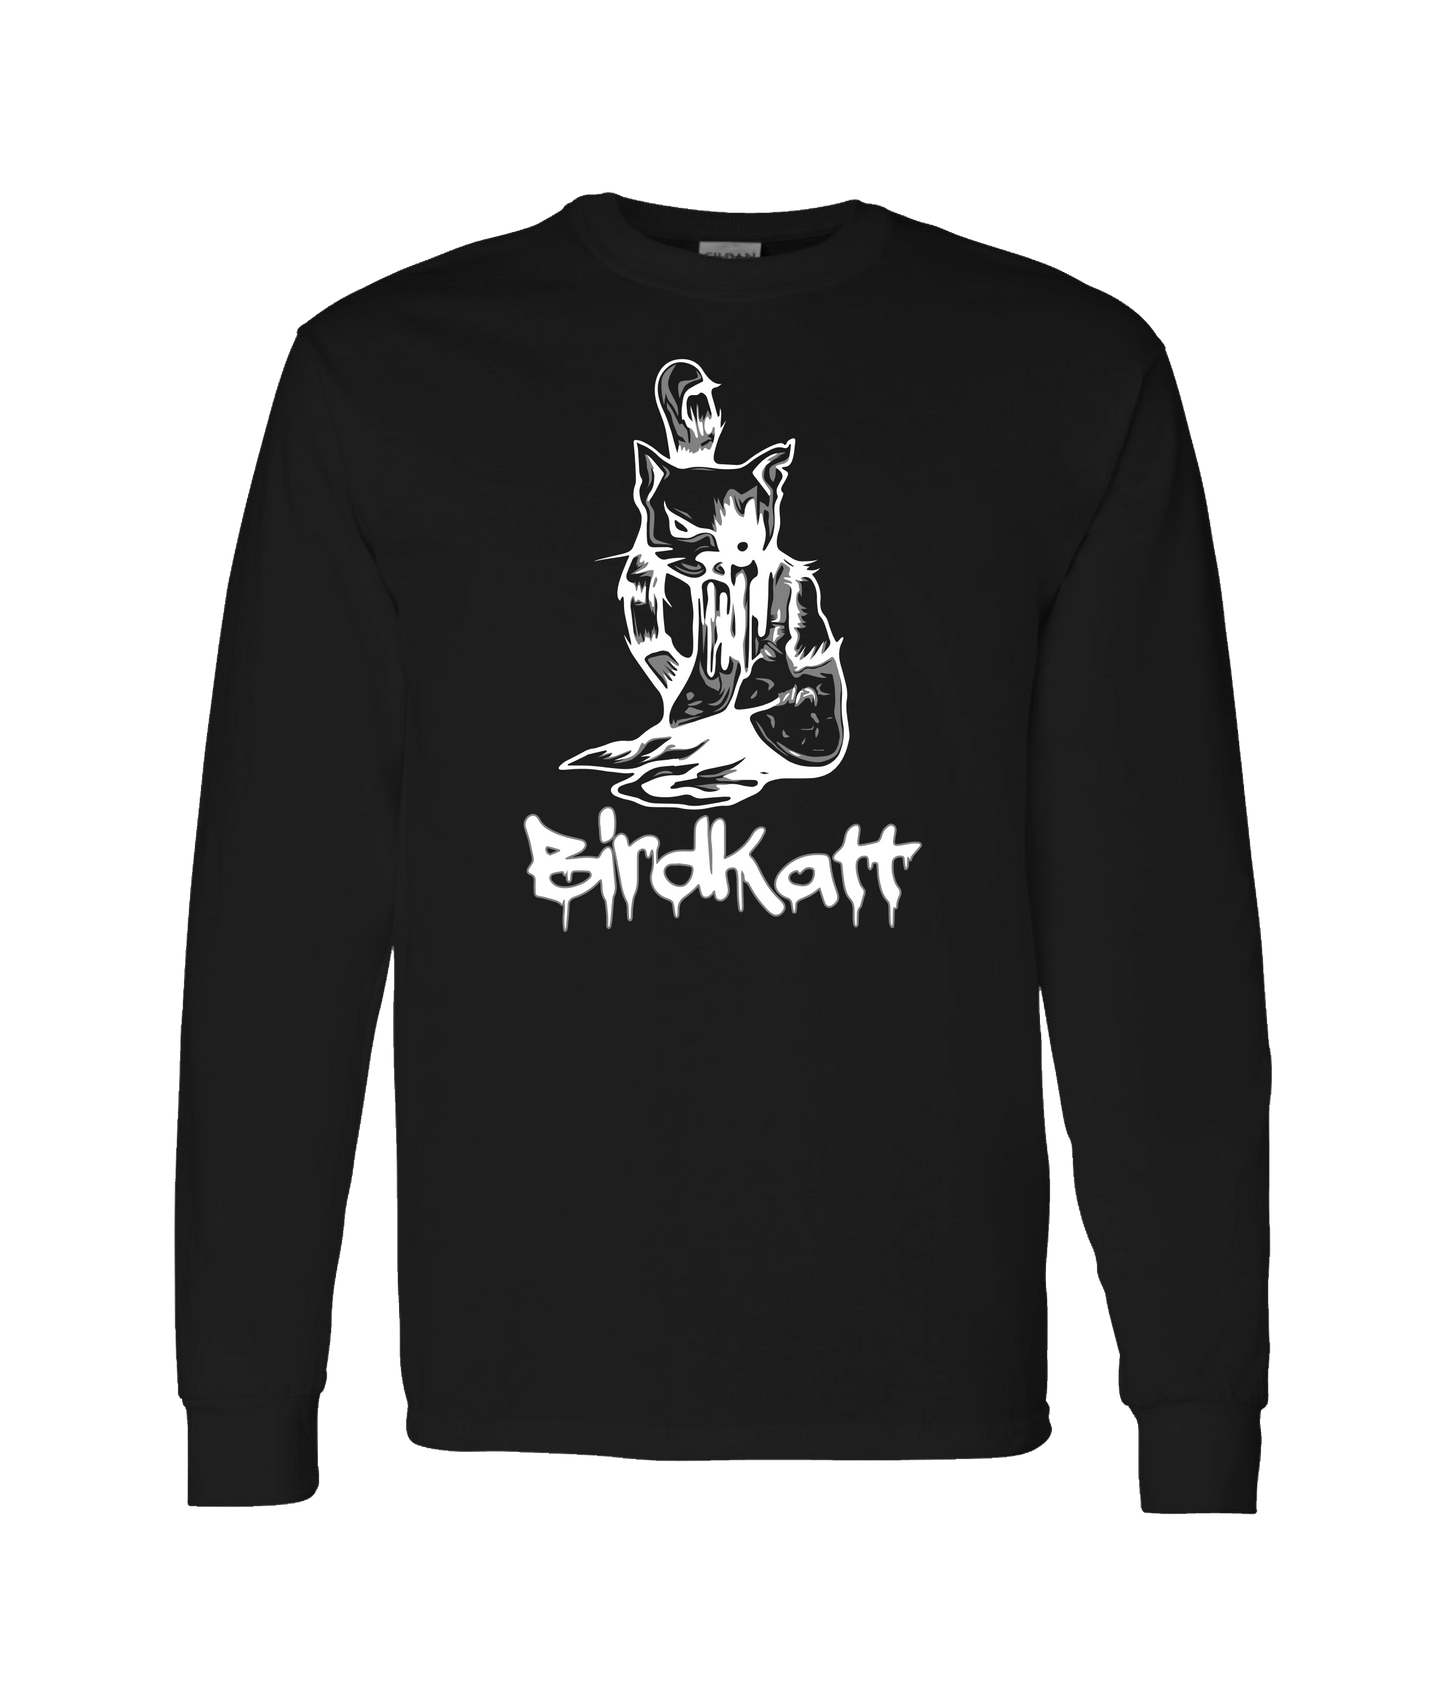 BirdKatt - B&W BKATT - Black Long Sleeve T